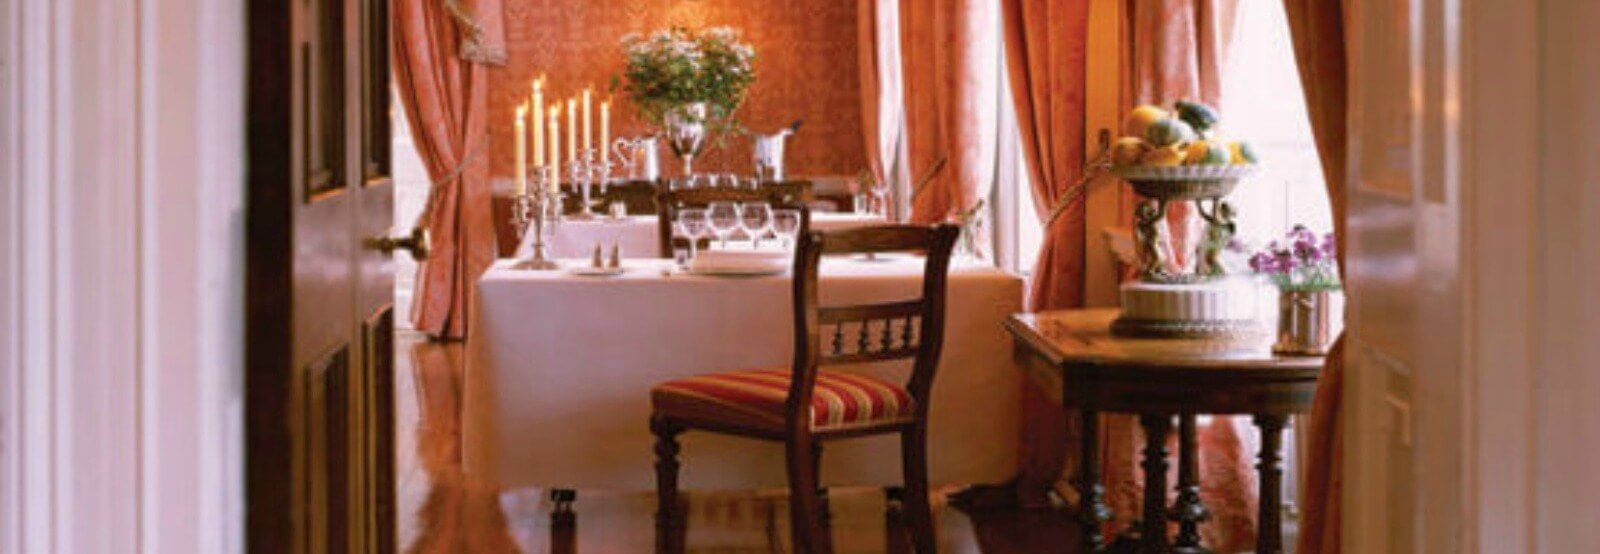  The Presidents' Room Restaurant